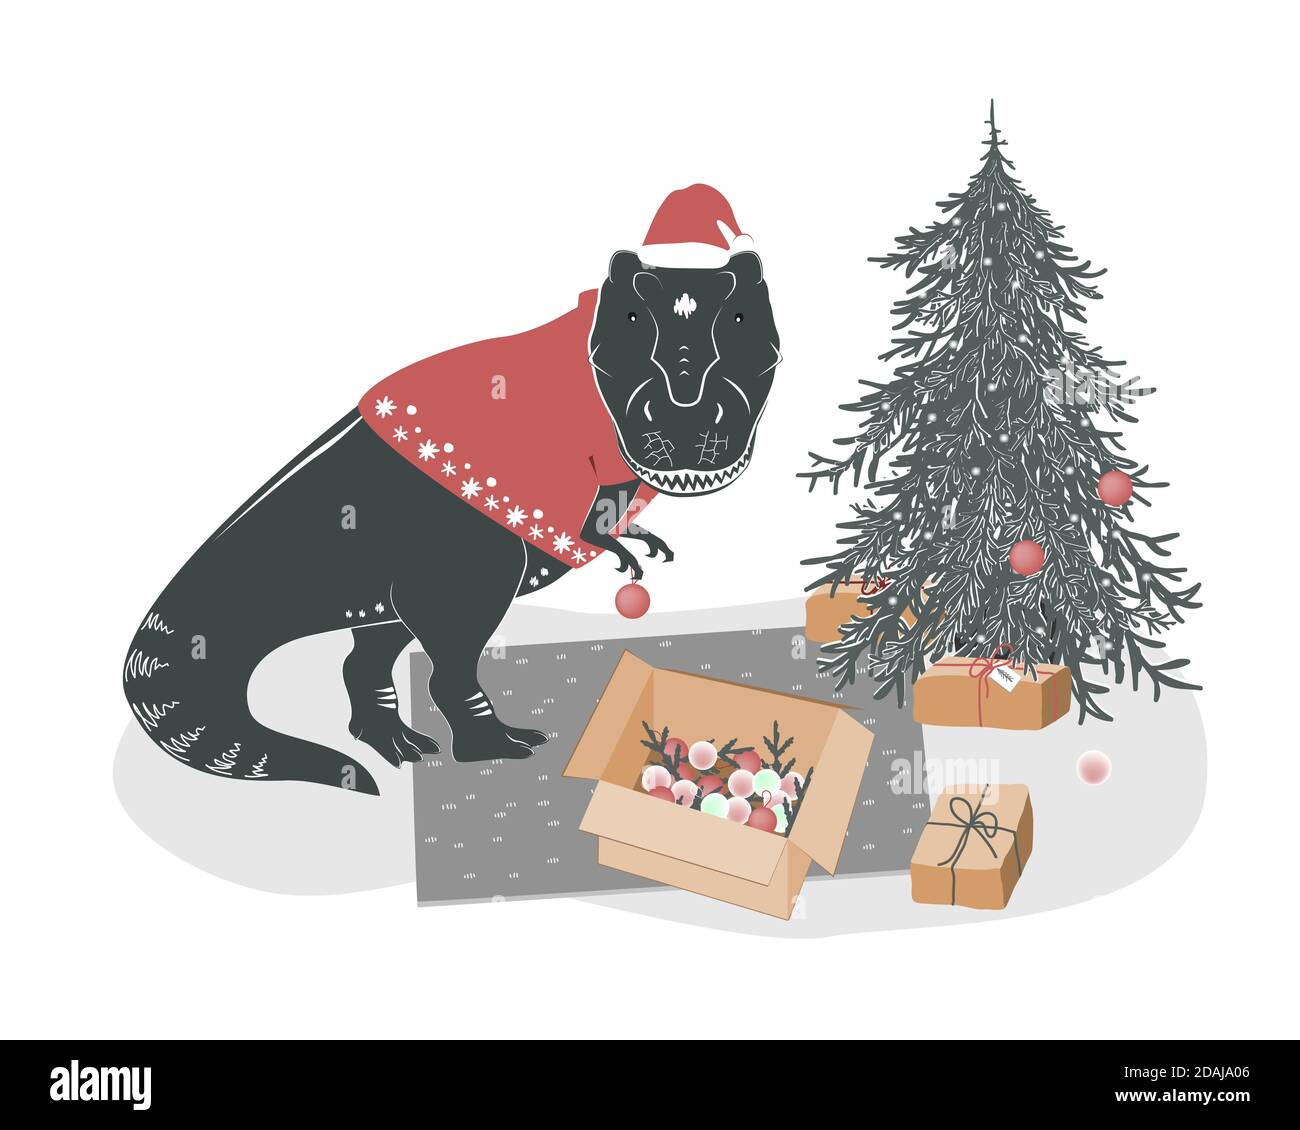 Niedliche junge T rex Dinosaurier Dekoration Weihnachtsbaum. Tyrannosaurus Weihnachten. Festlicher Winterdruck, Vektorgrafik Stock Vektor